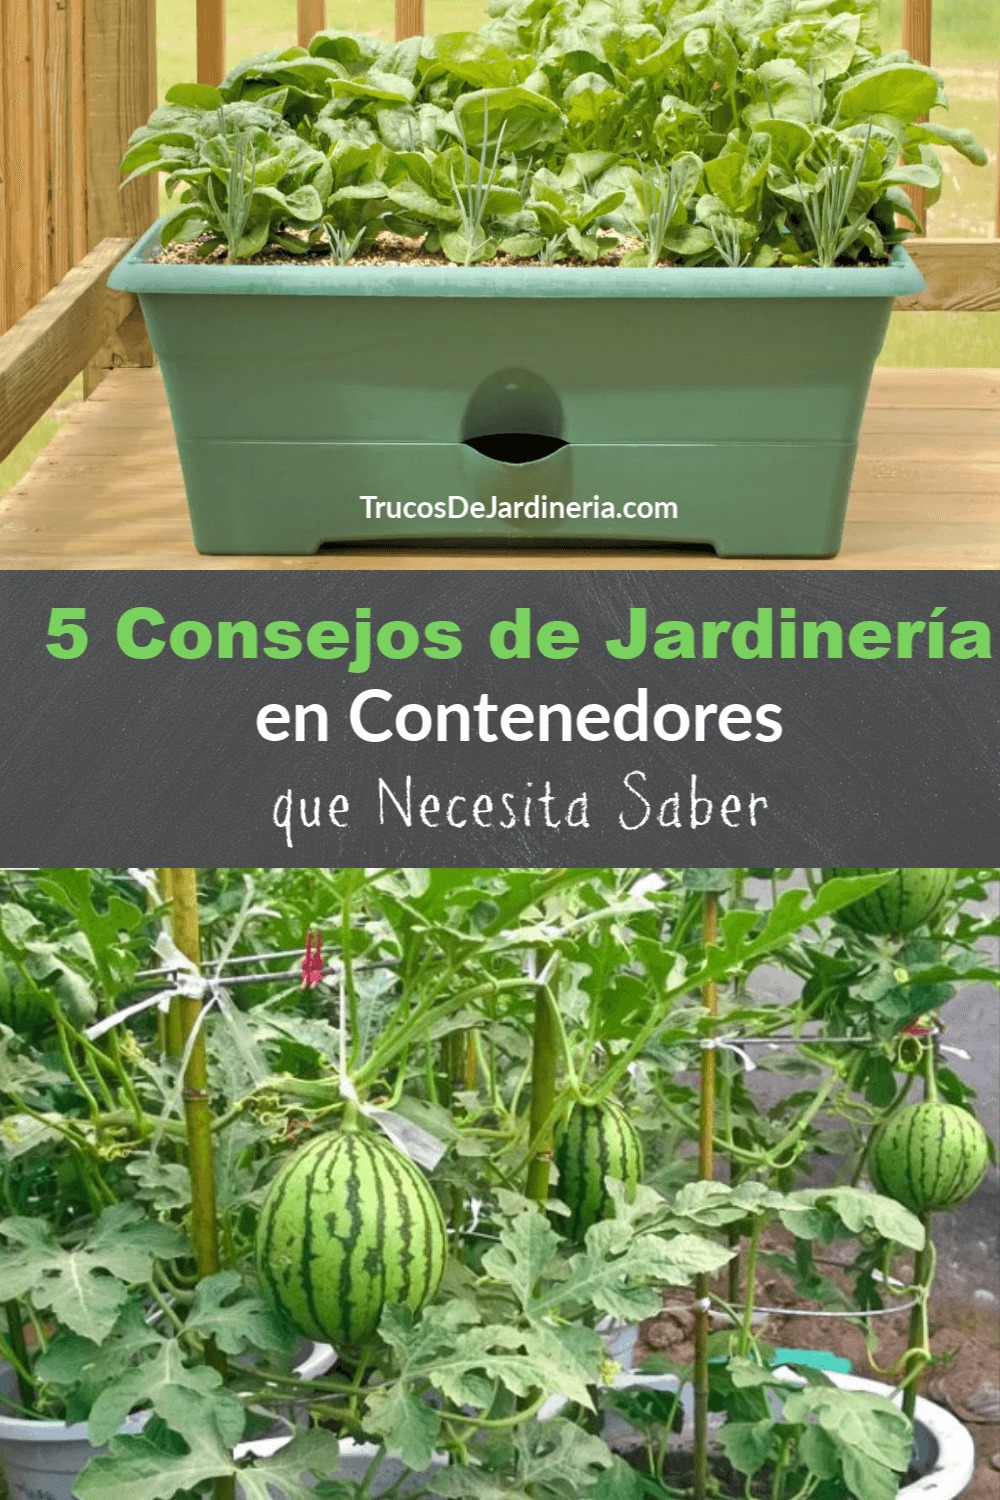 5 Consejos de Jardinería en Contenedores